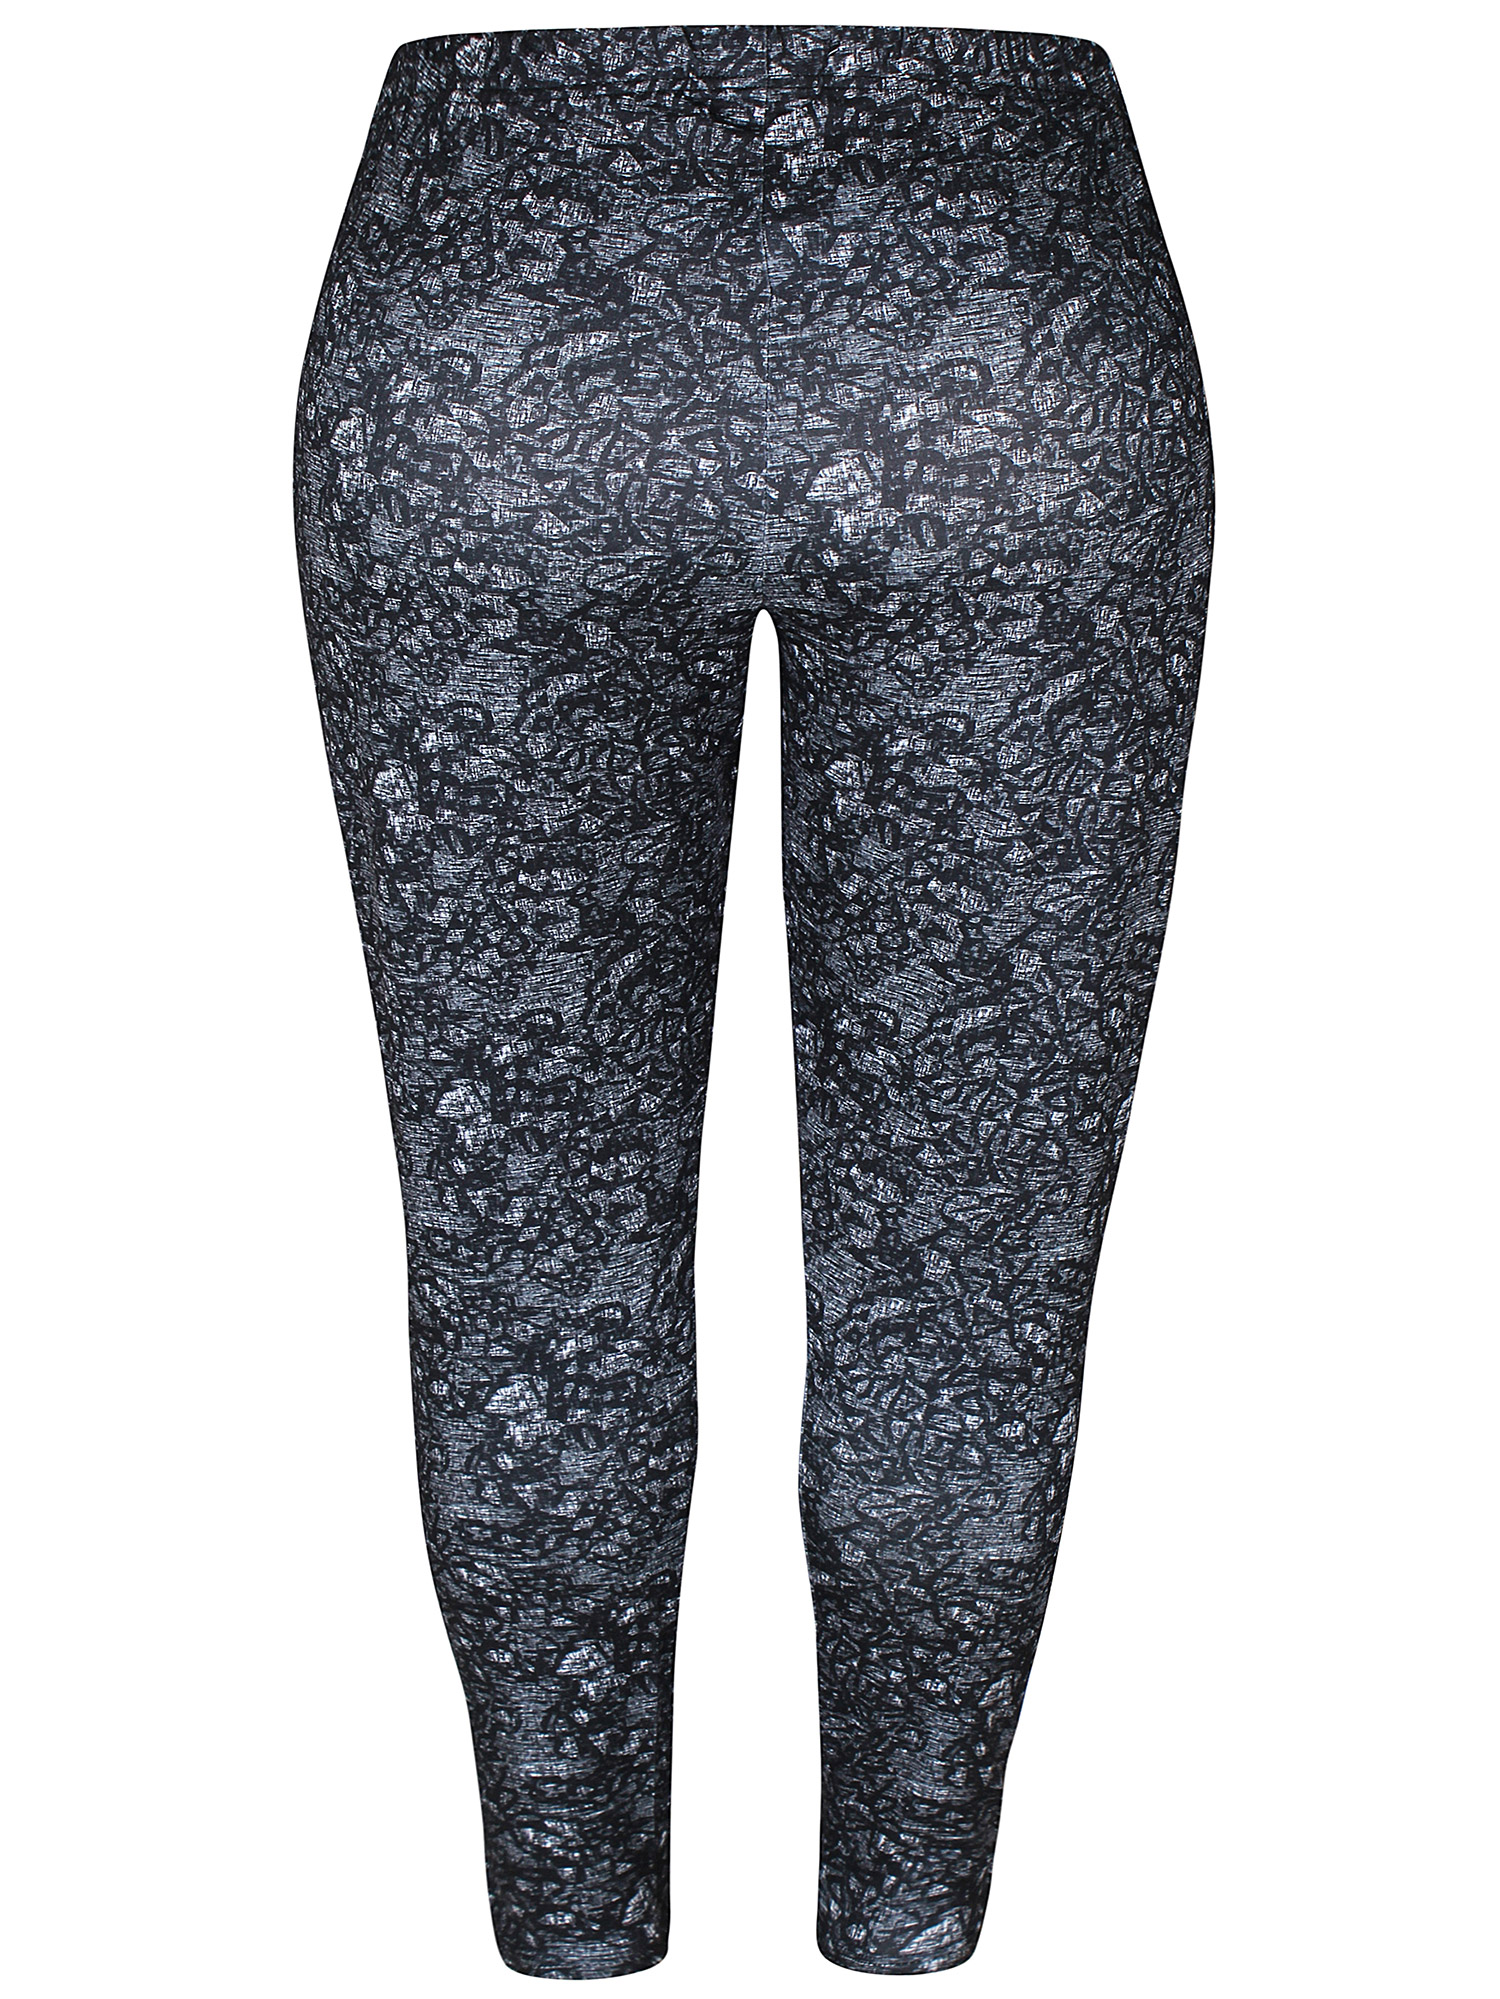 SUSA - Svarte leggings med print fra Zhenzi